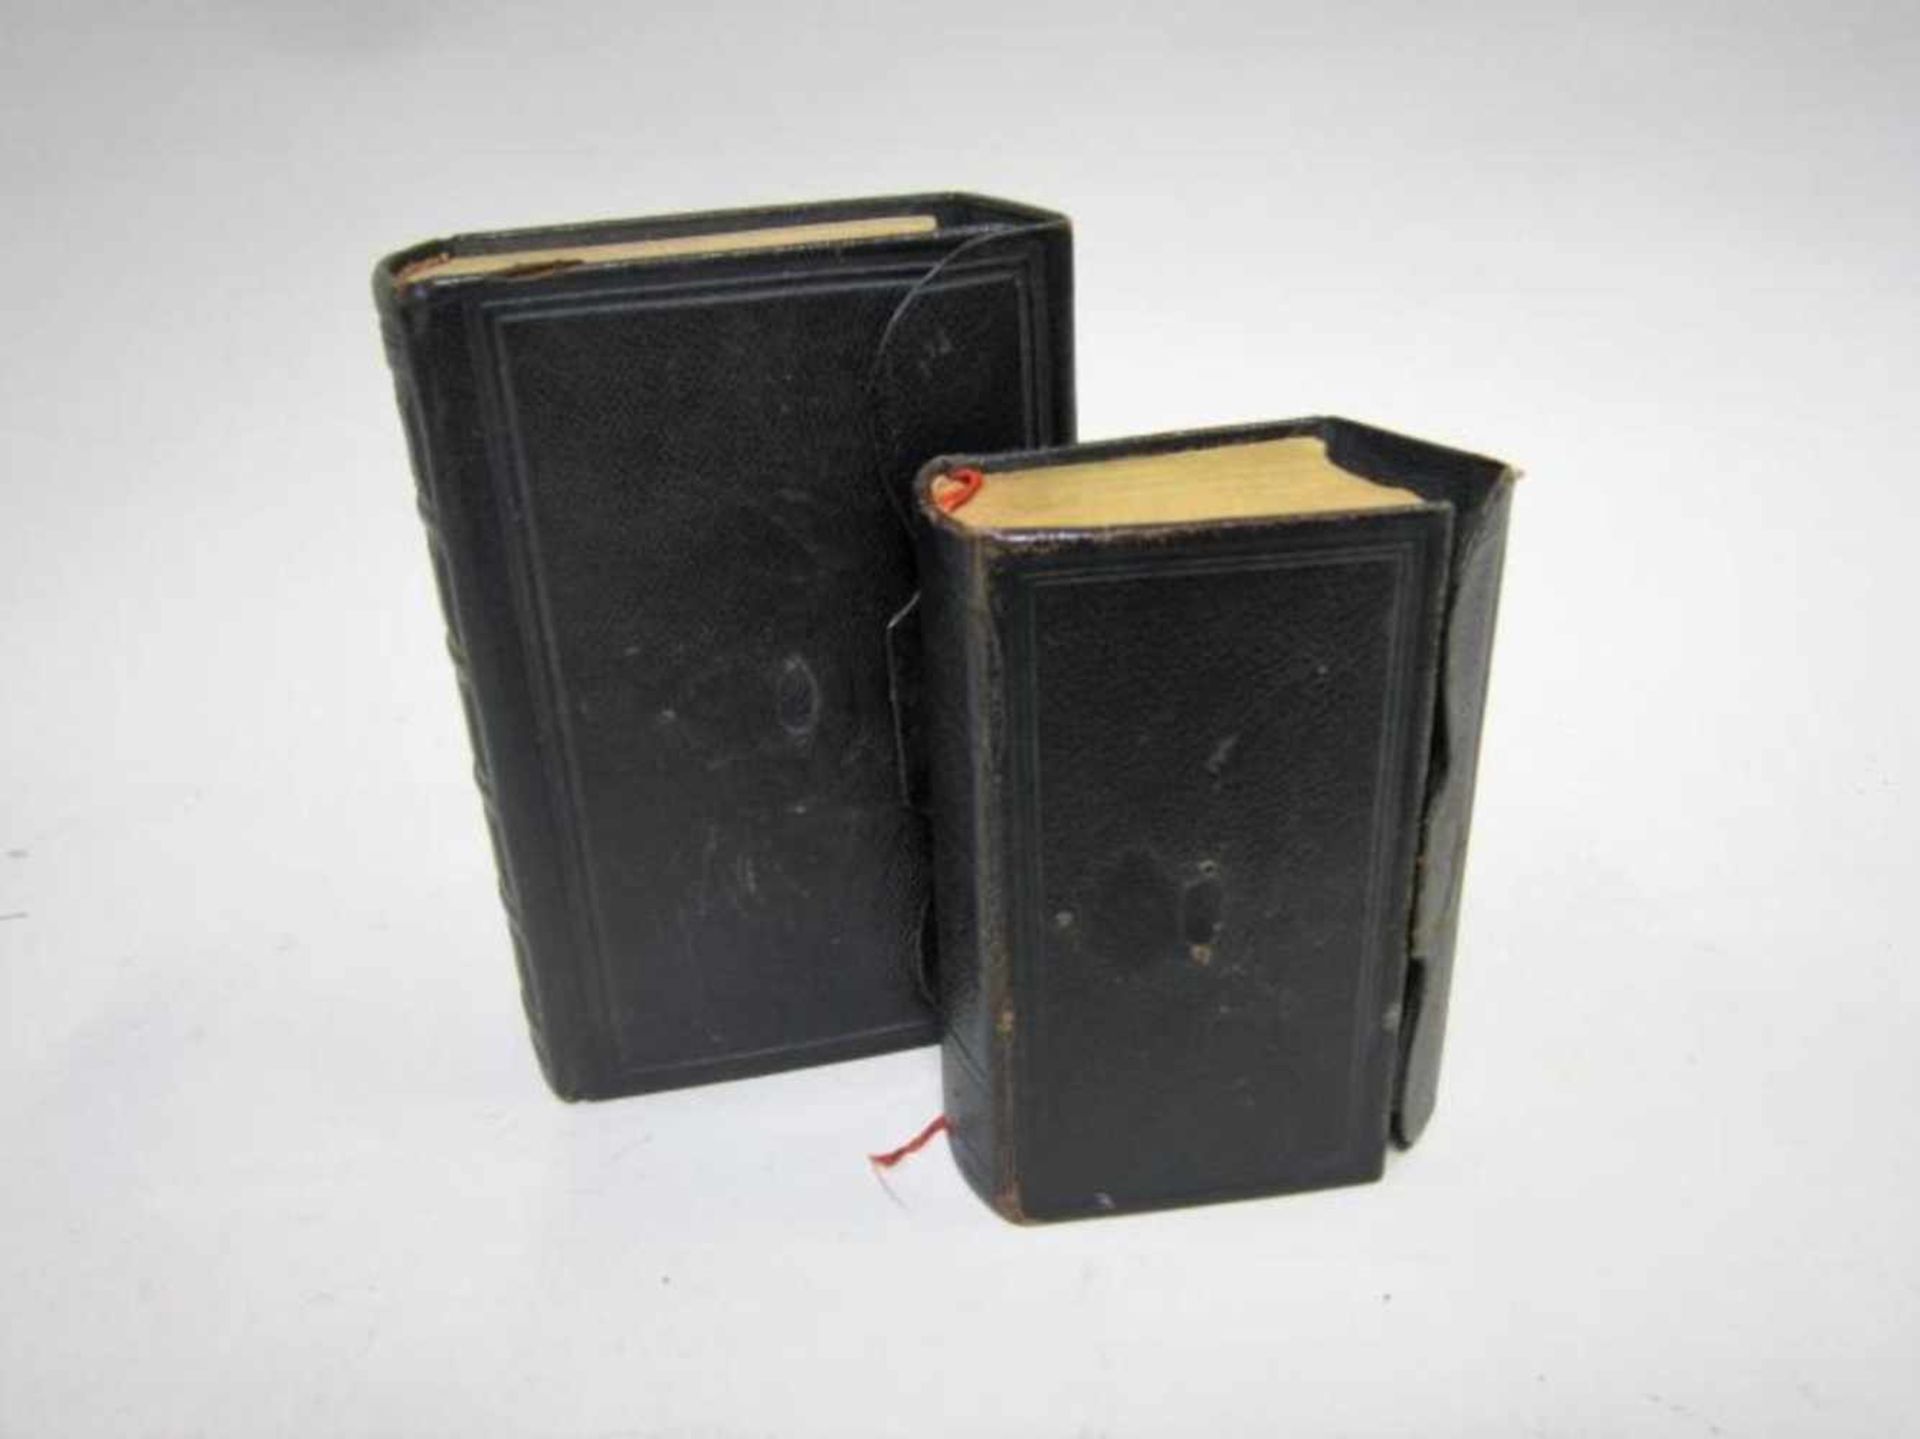 Twee bijbels, nieuwe testament. Kleinste bijbel: Johannes Ensched? en Zonen 1918. grotere bijbel: A.